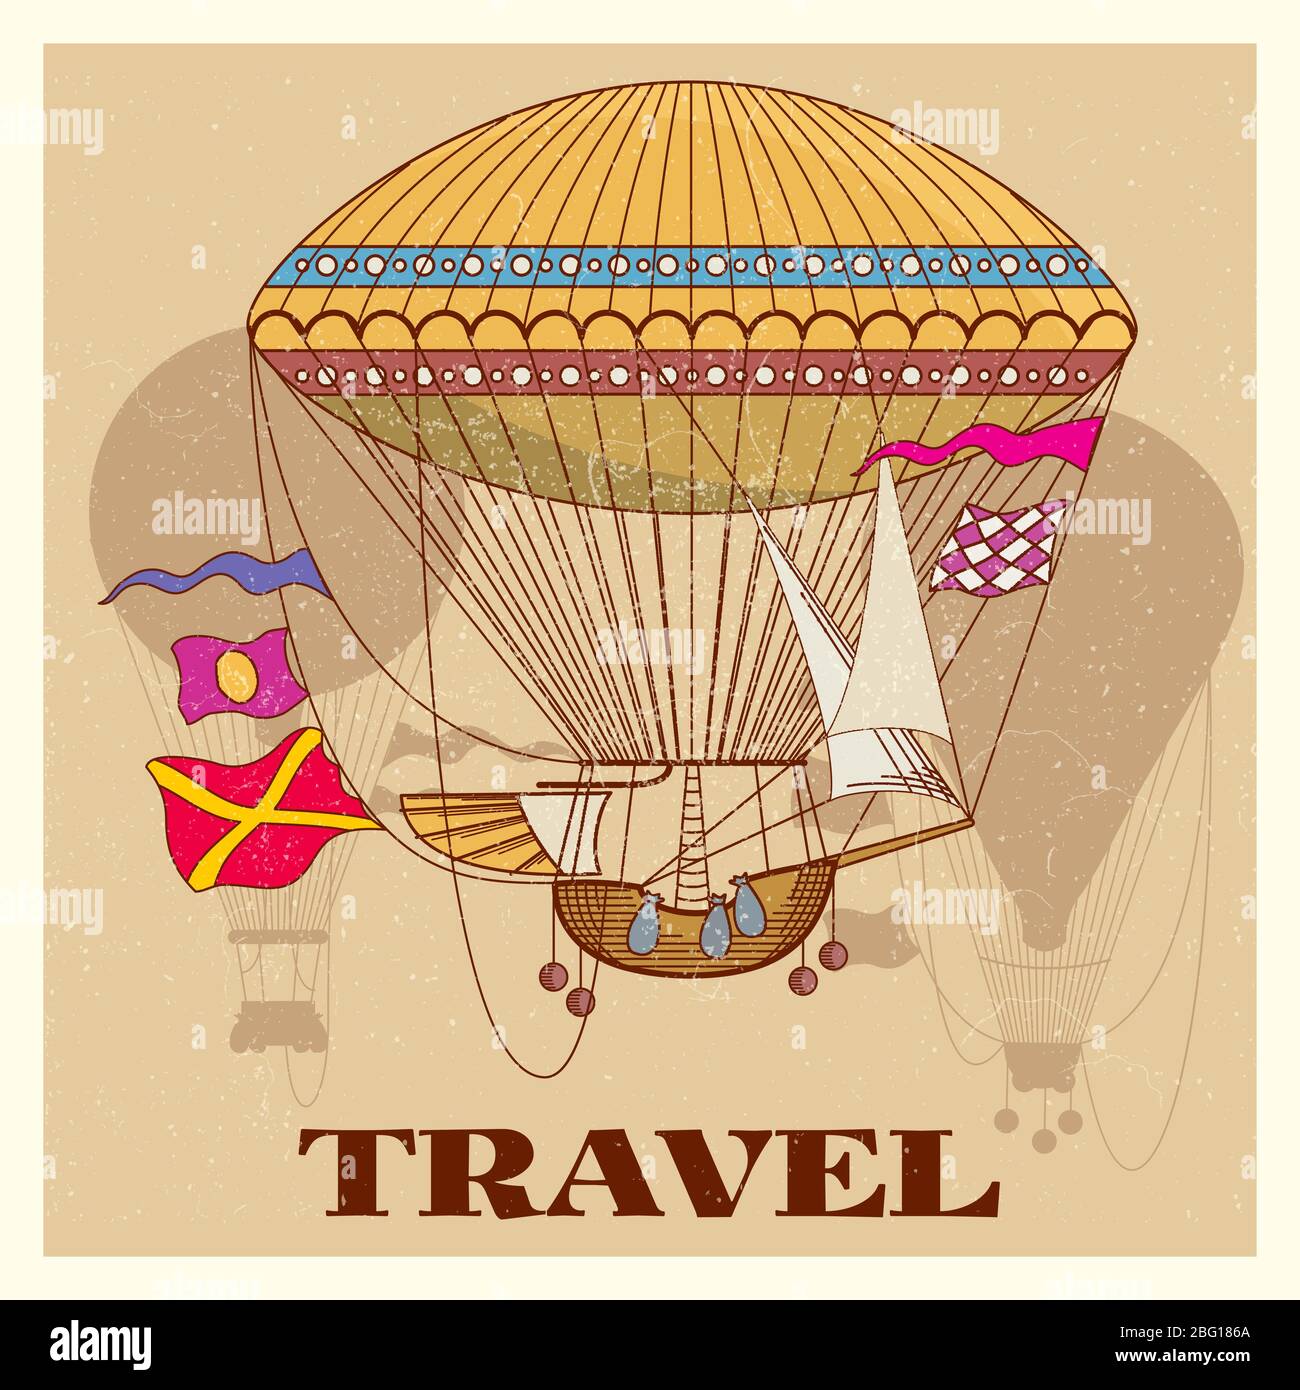 Affiche vintage Grunge avec ballon chaud rétro air. Illustration rétro vintage de grunge de transport en montgolfière Illustration de Vecteur